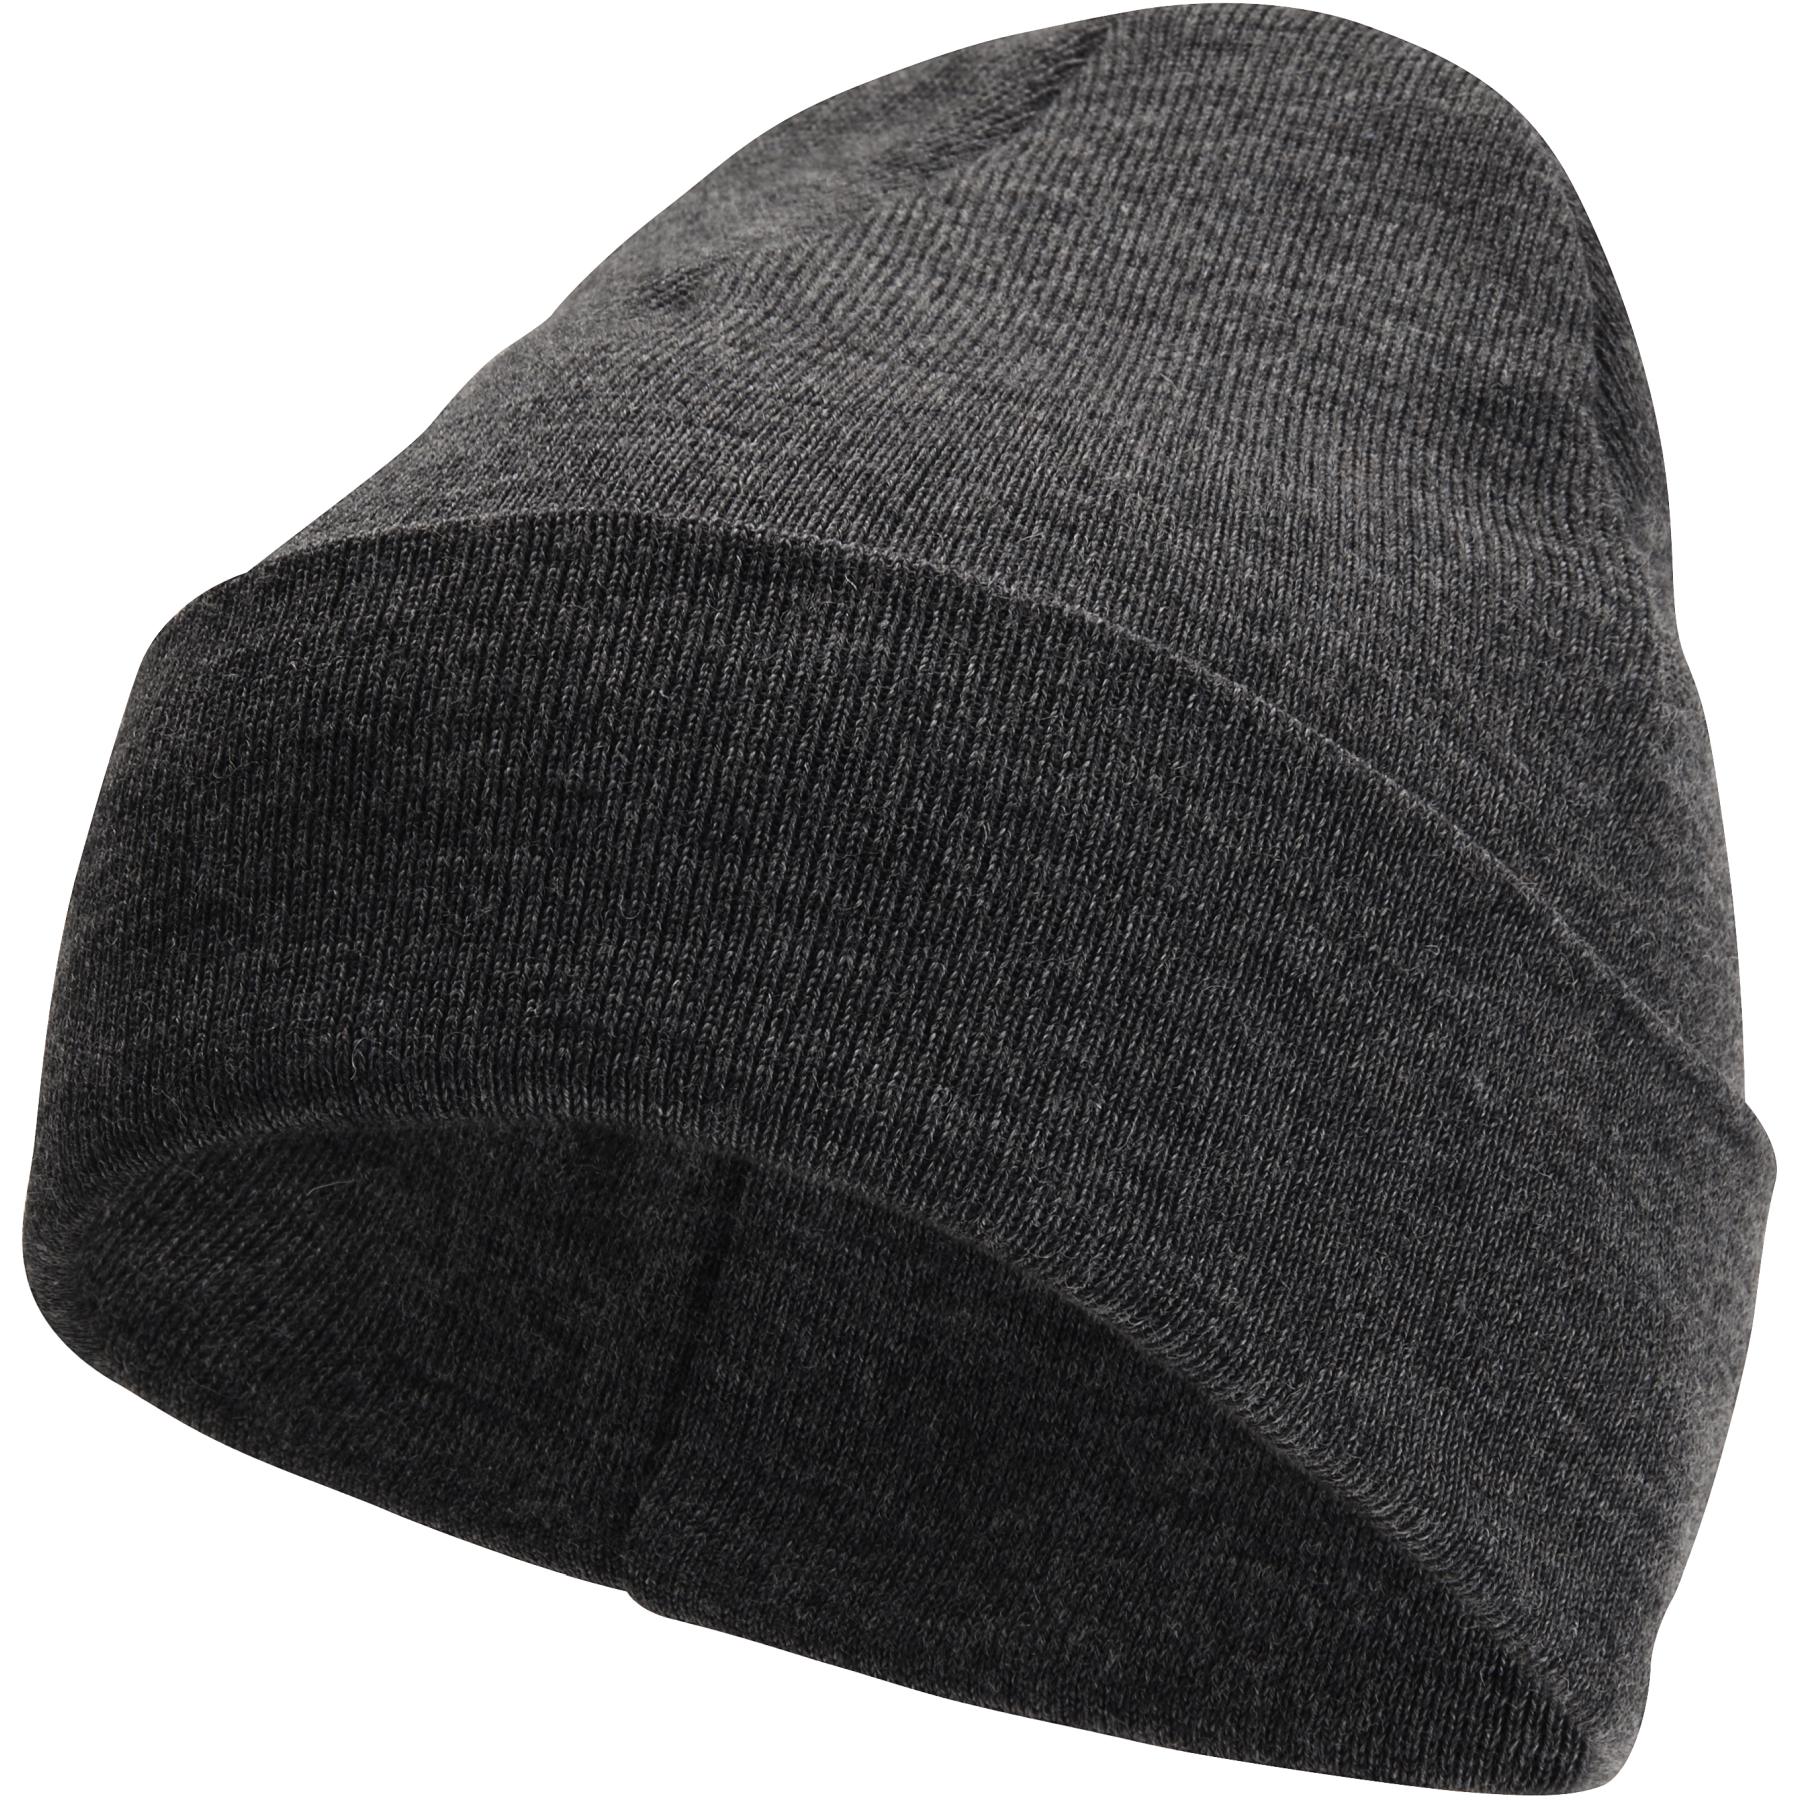 Produktbild von Woolpower Beanie Classic Mütze - grey